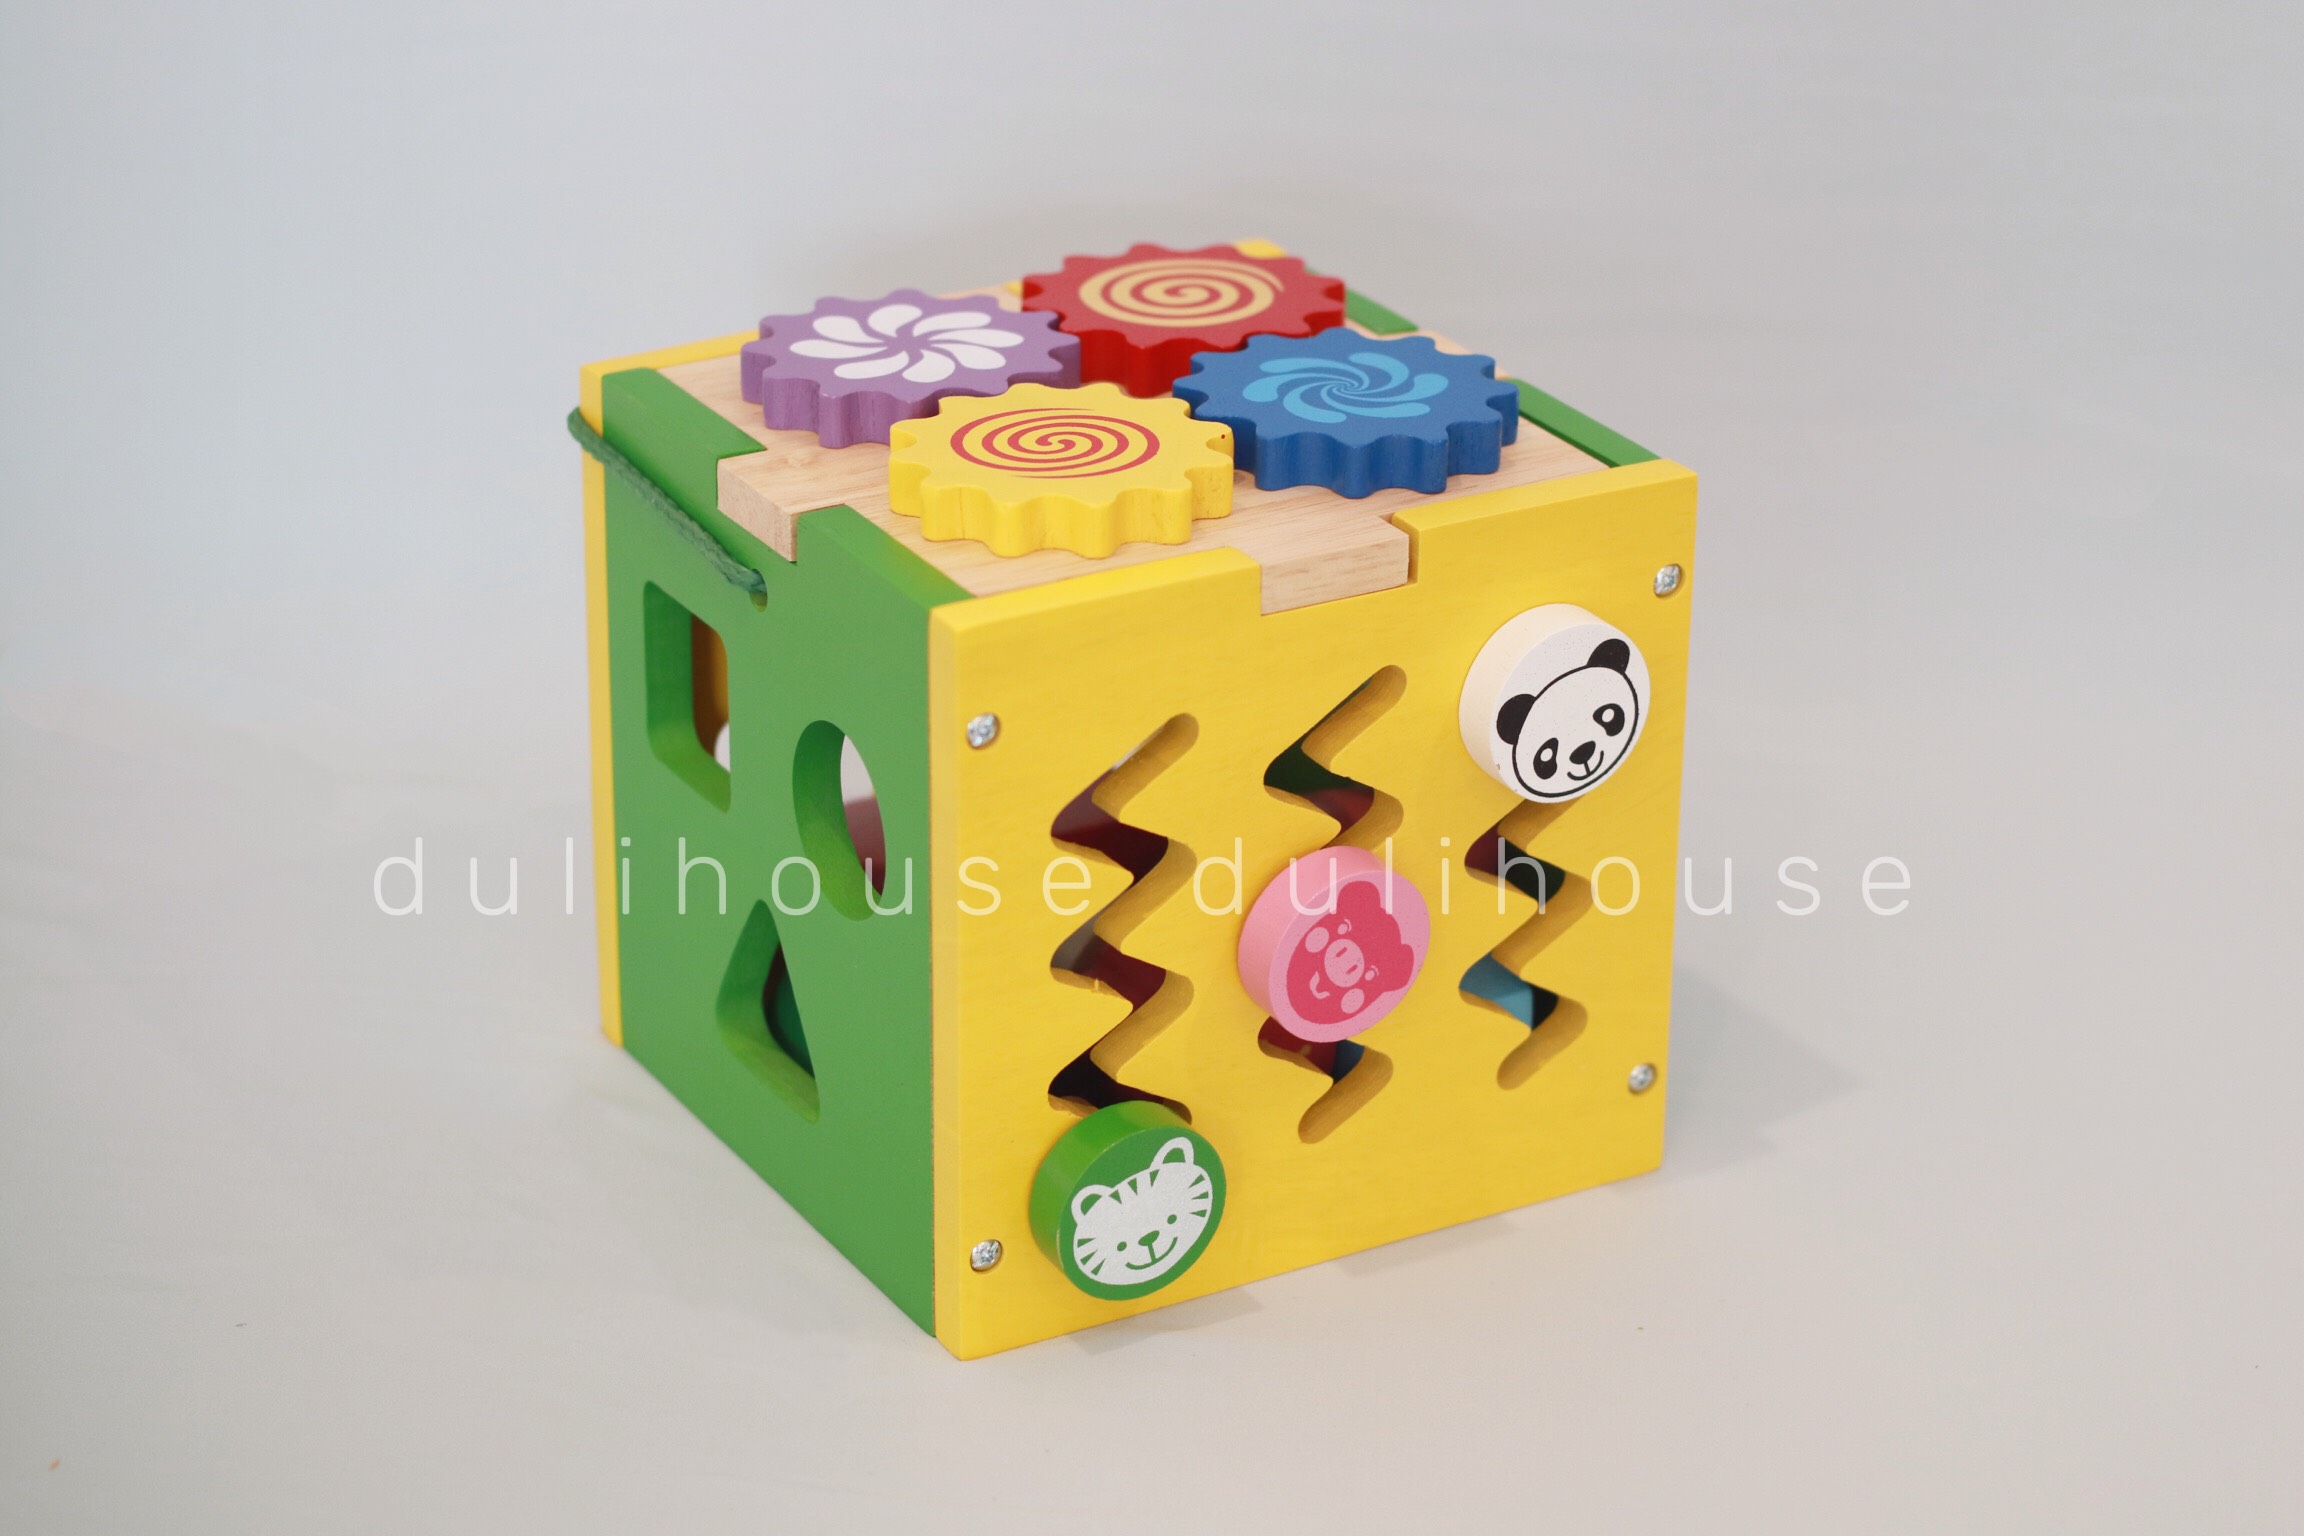 Đồ chơi gỗ hộp thả khối đa năng, hỗ trợ bé phân biệt màu sắc, nhận biết hình khối, rèn luyện đôi tay linh hoạt khéo léo - Sản xuất tại Việt Nam